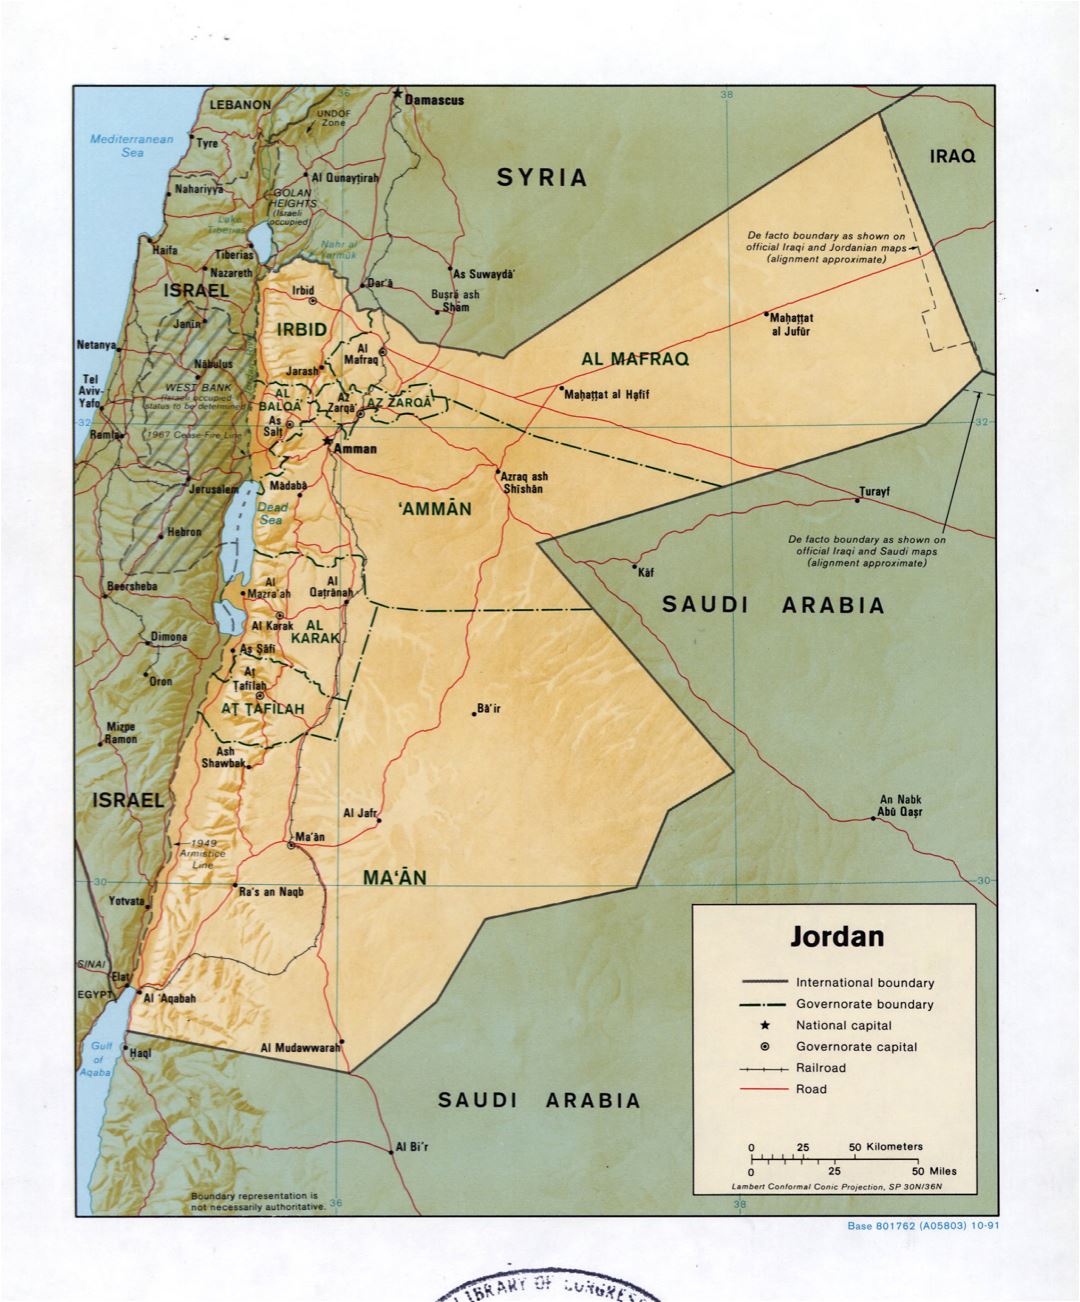 Grande detallado mapa político y administrativo de Jordania con relieve, carreteras, ferrocarriles y principales ciudades - 1991